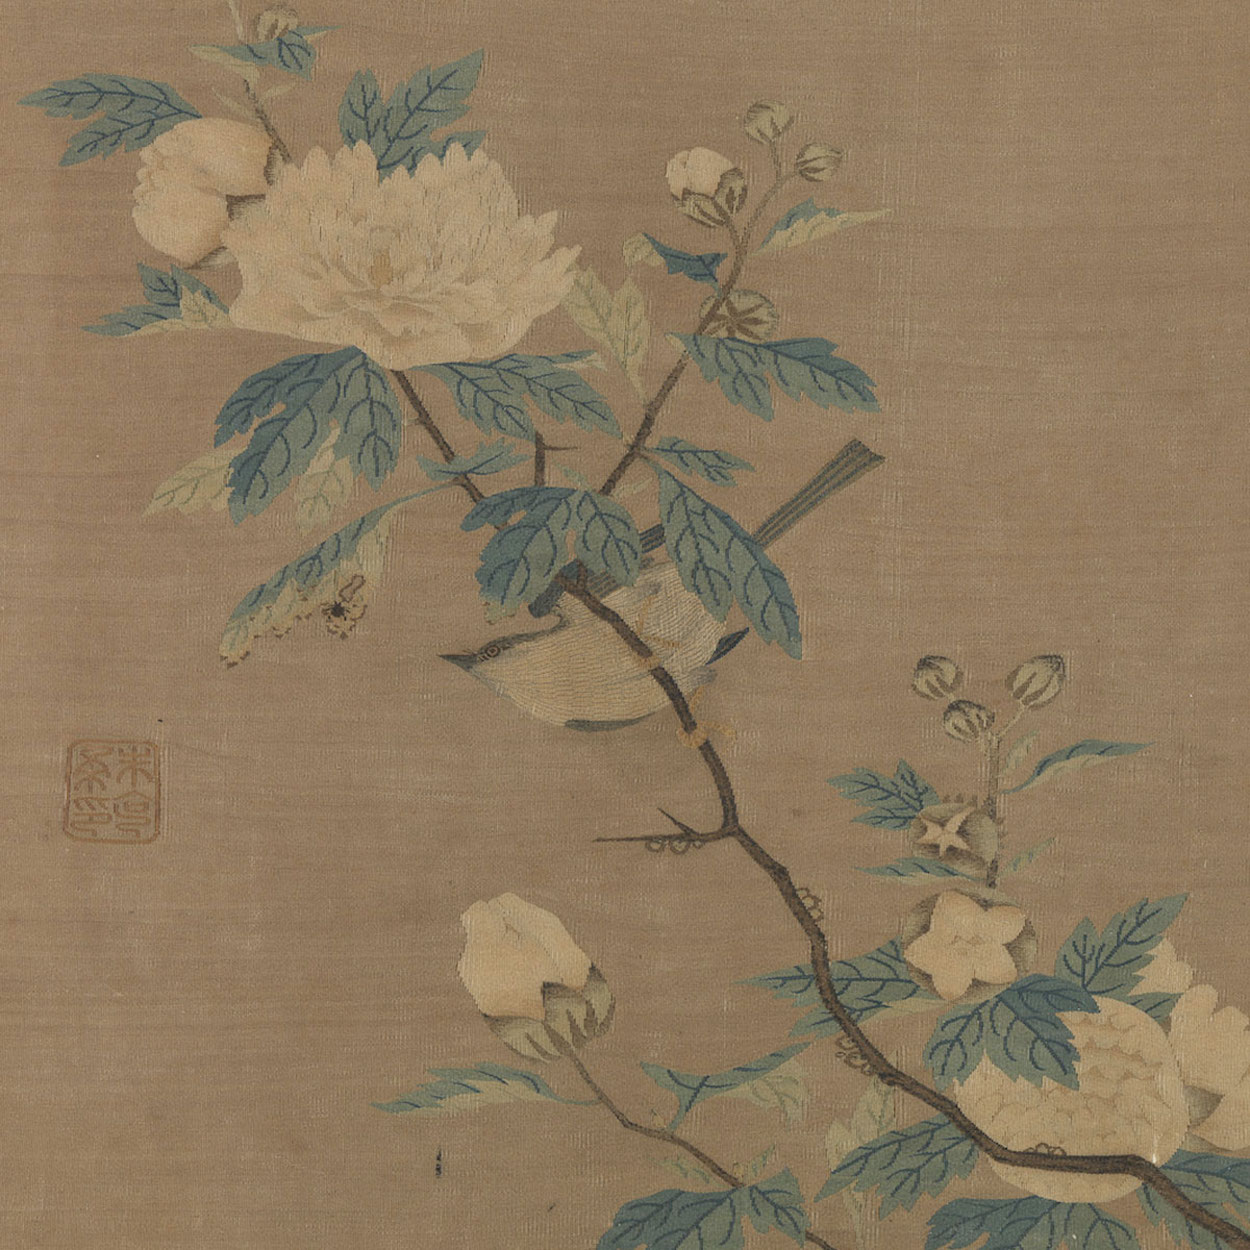 새와 꽃(Bird and Flowers) by Zhu Kerou - 1127-1279년 사이 